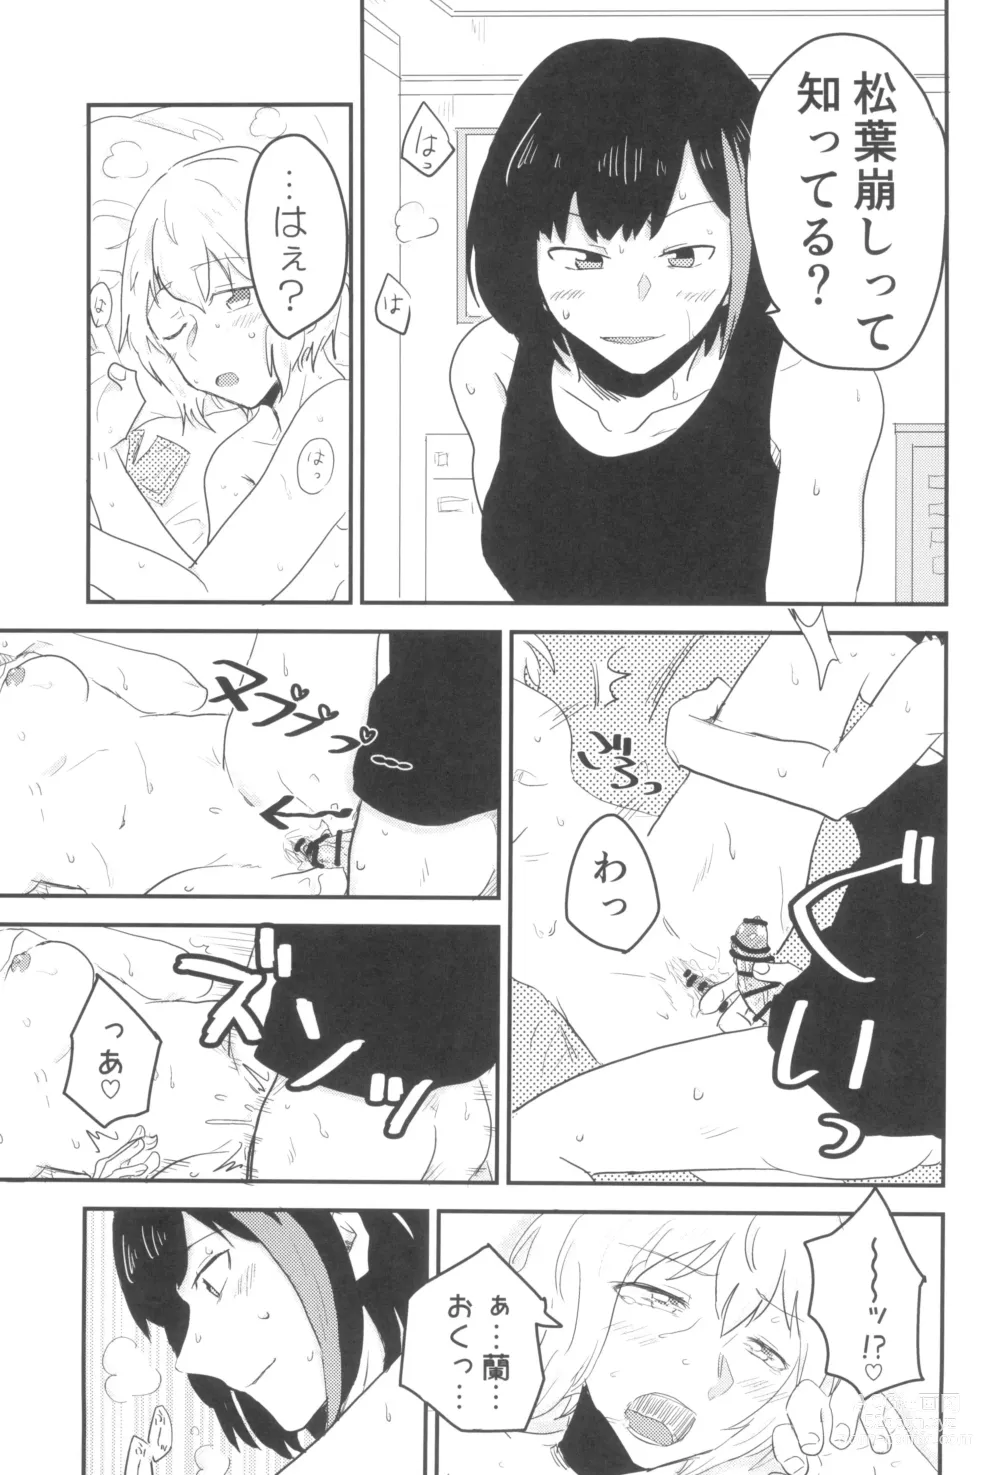 Page 39 of doujinshi secret dream panic